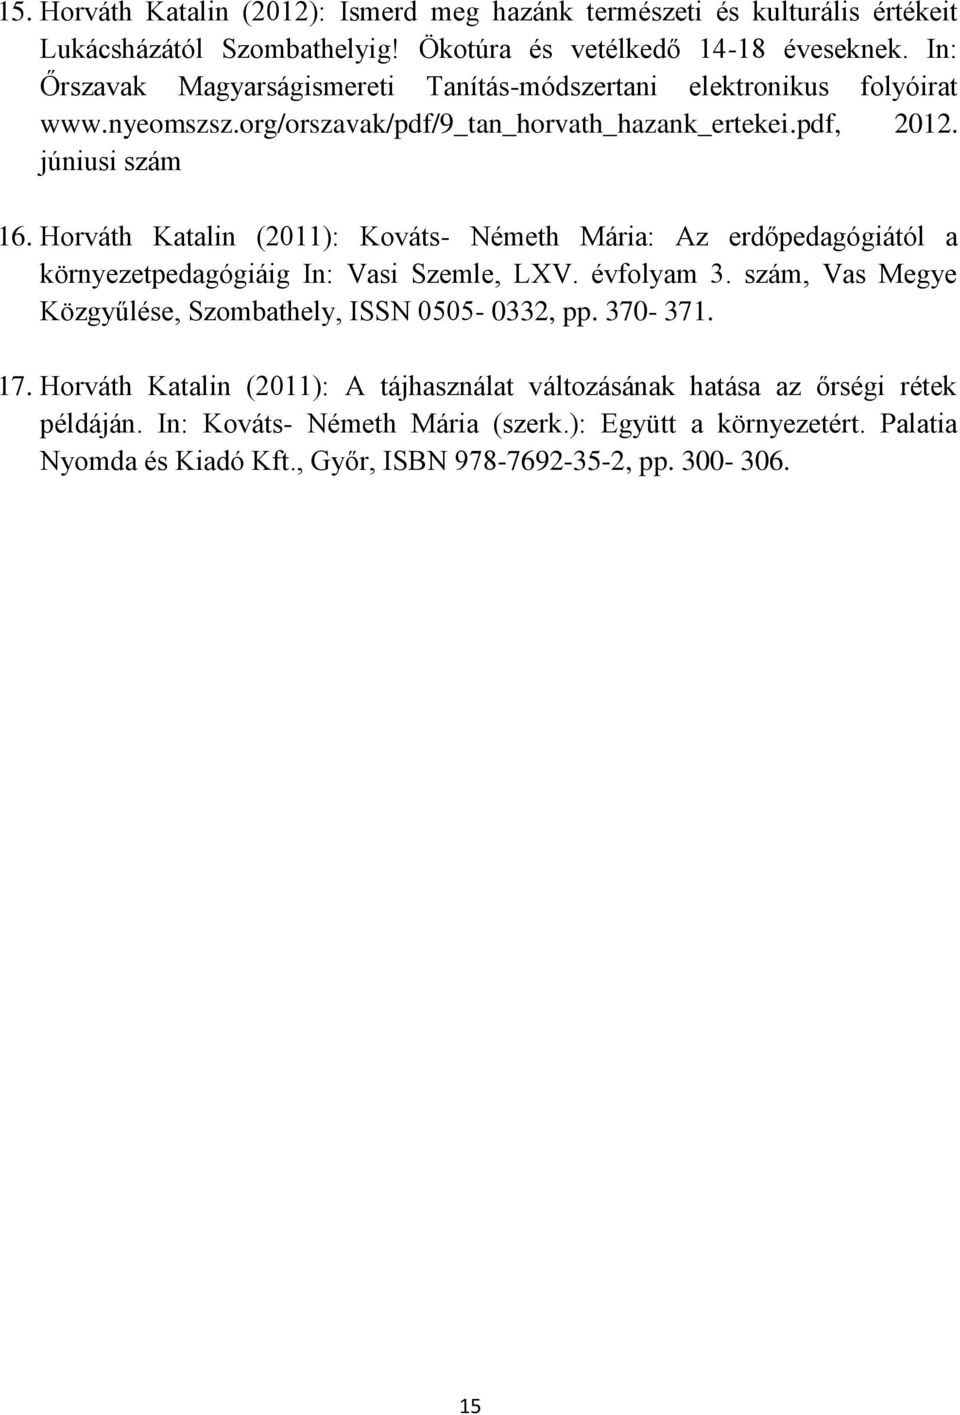 Horváth Katalin (2011): Kováts- Németh Mária: Az erdőpedagógiától a környezetpedagógiáig In: Vasi Szemle, LXV. évfolyam 3.